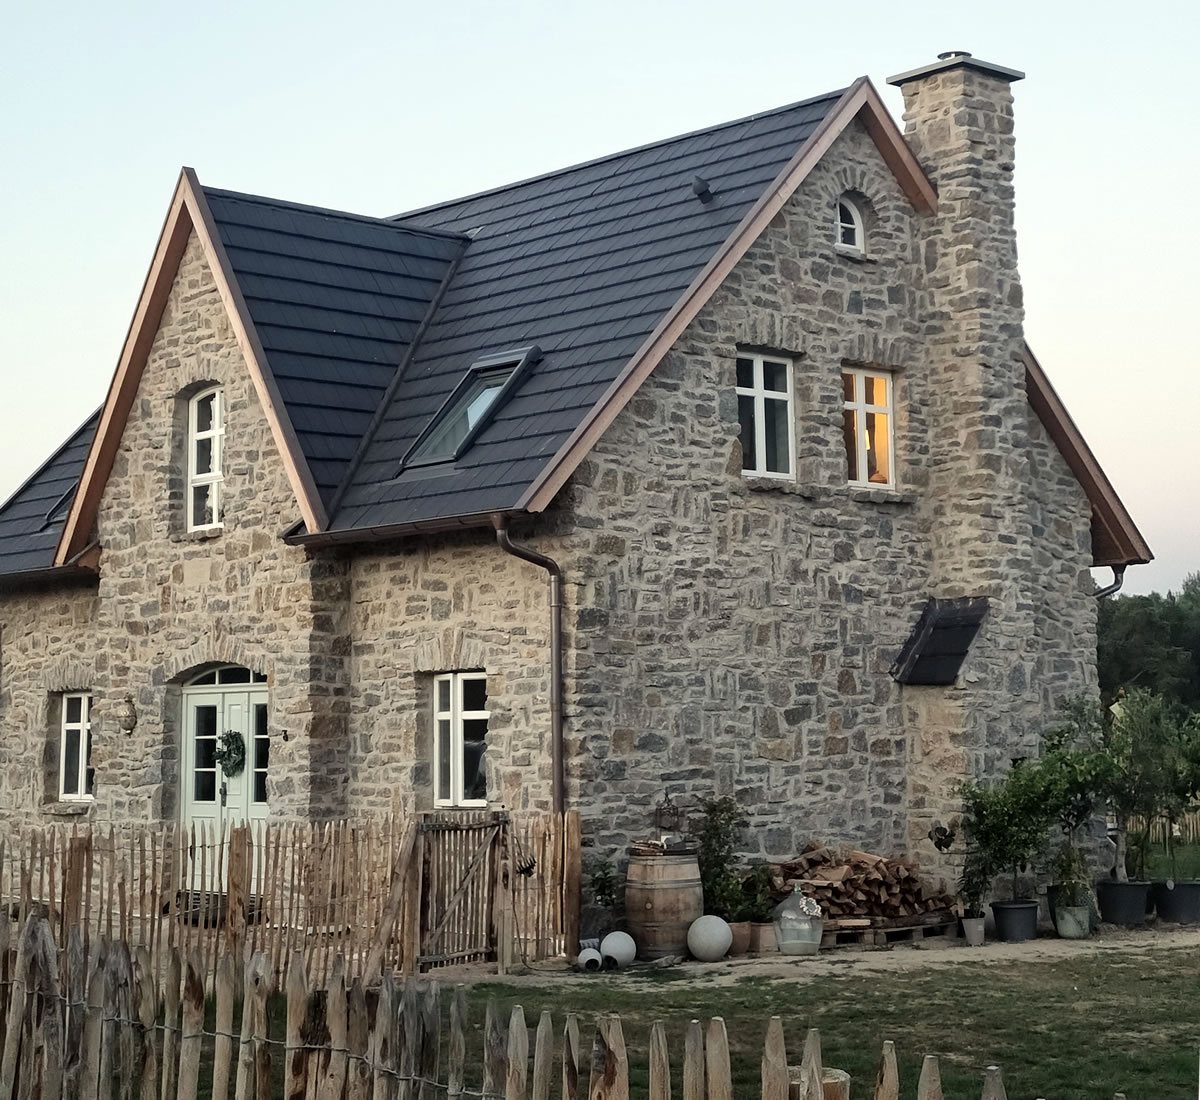 Vorderansicht eines englischen Cottages mit Hauseingang, Staketenzaun und Schornstein